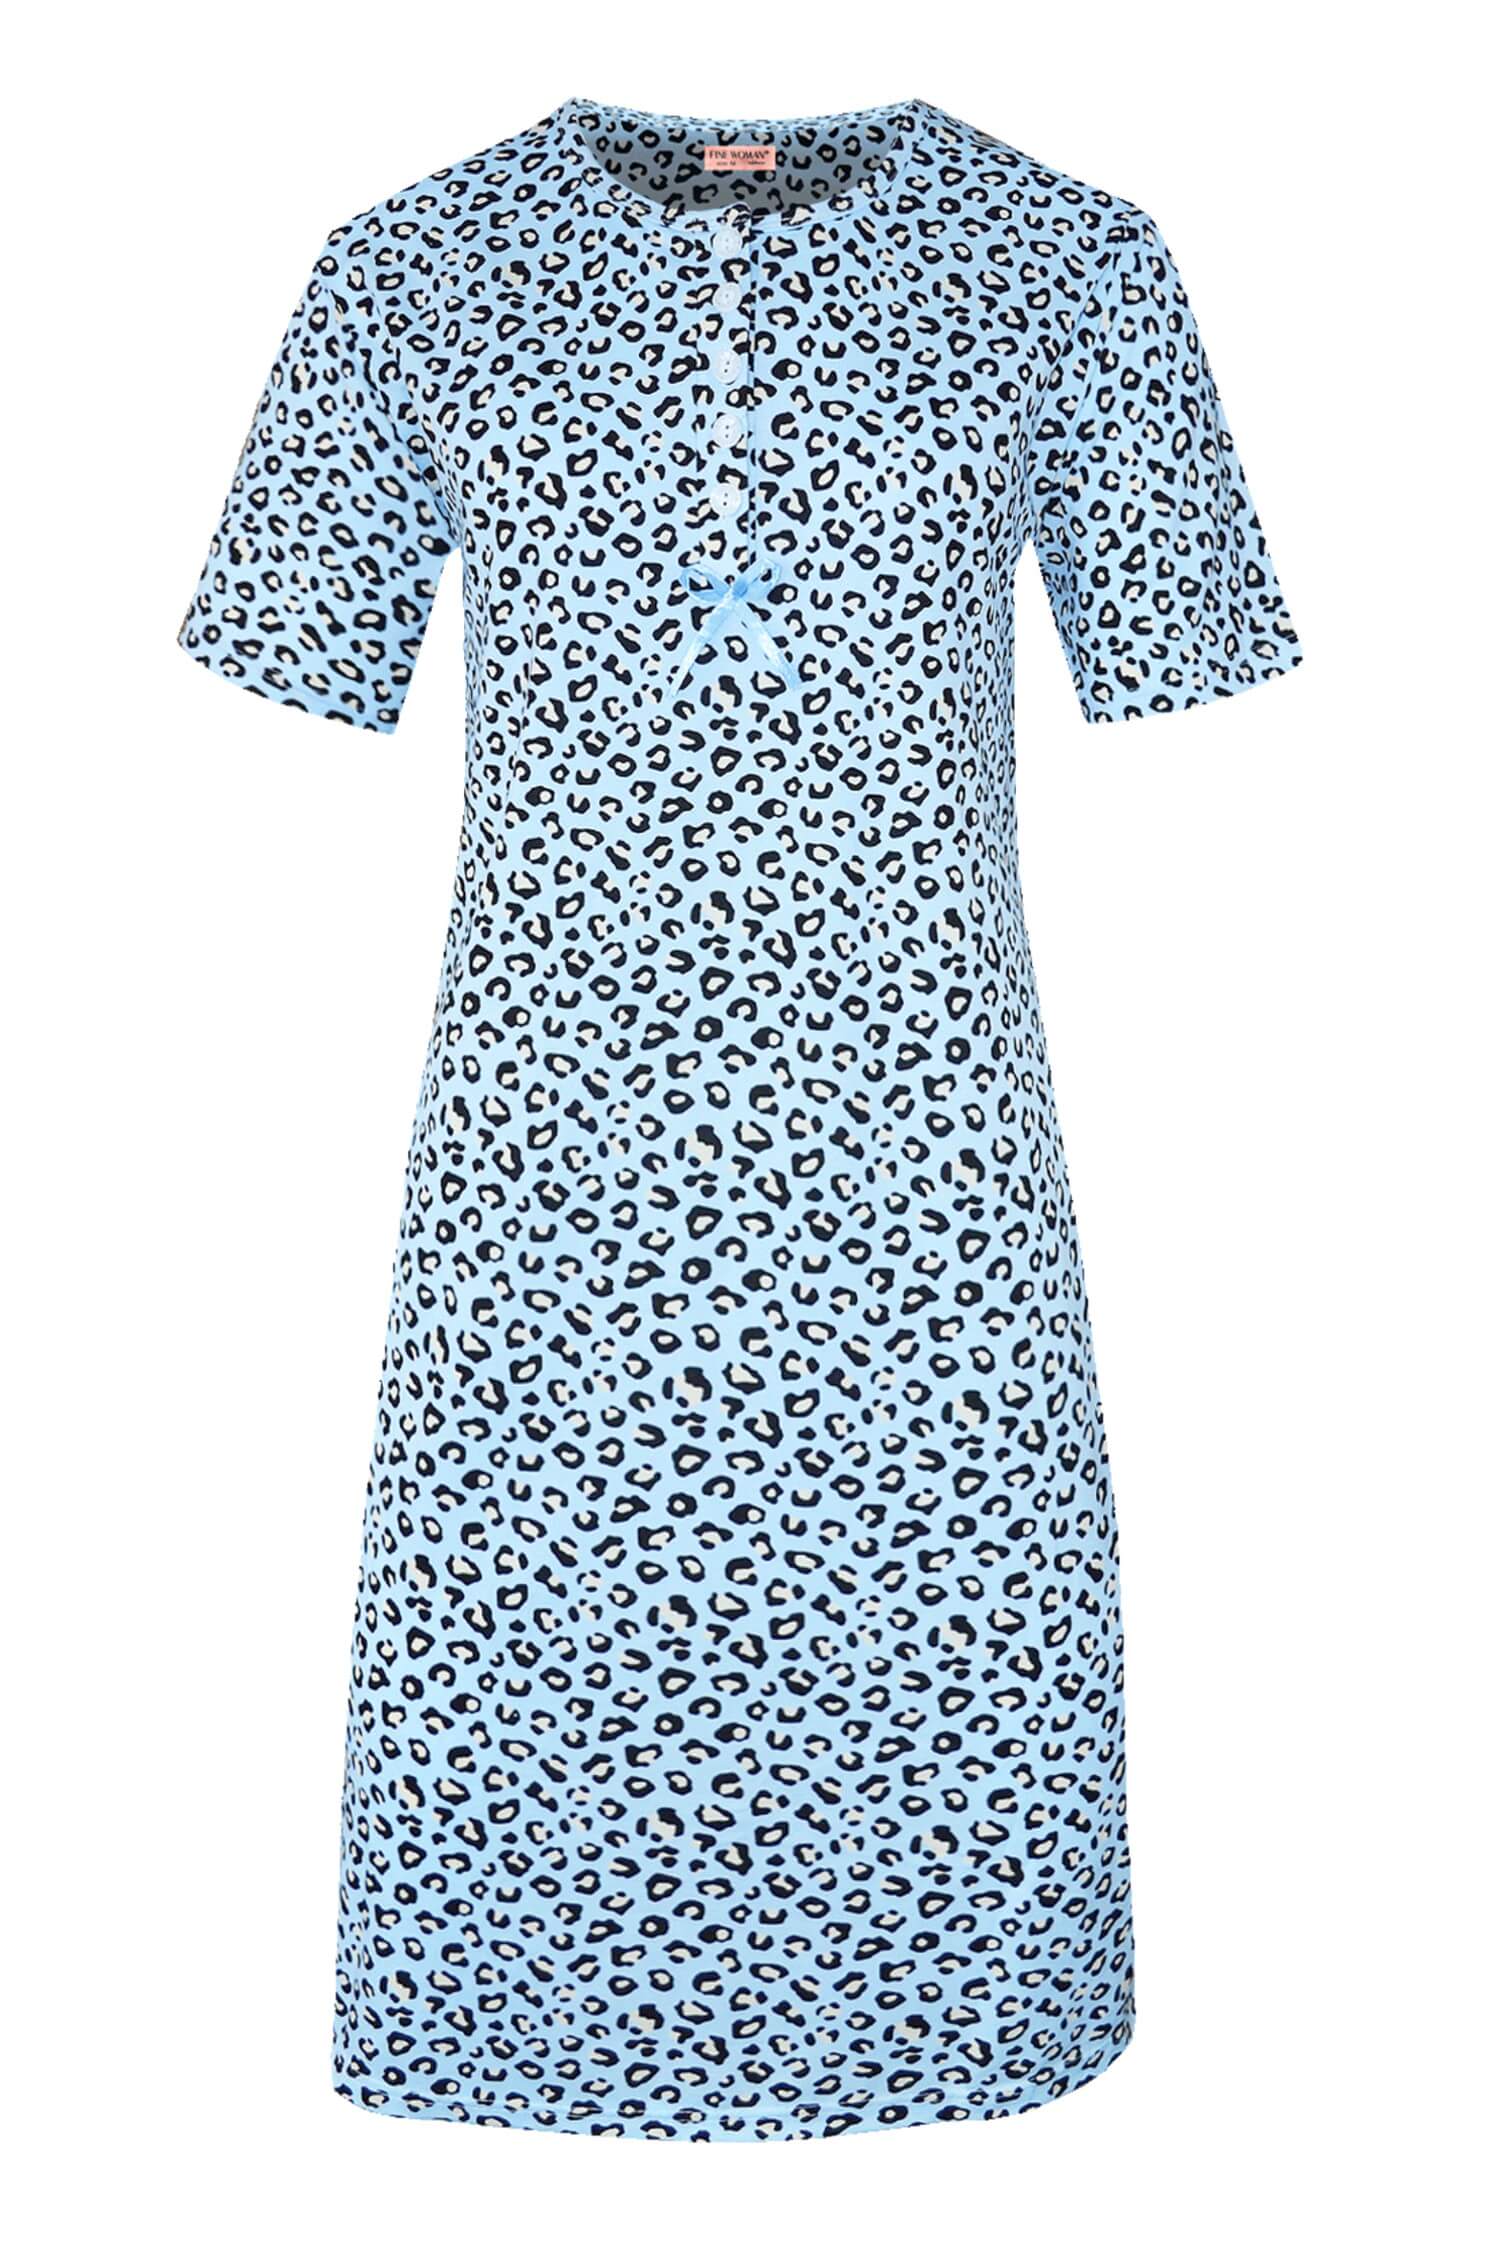 Katarina dámská noční košile leopardí vzor 6529 L světle modrá